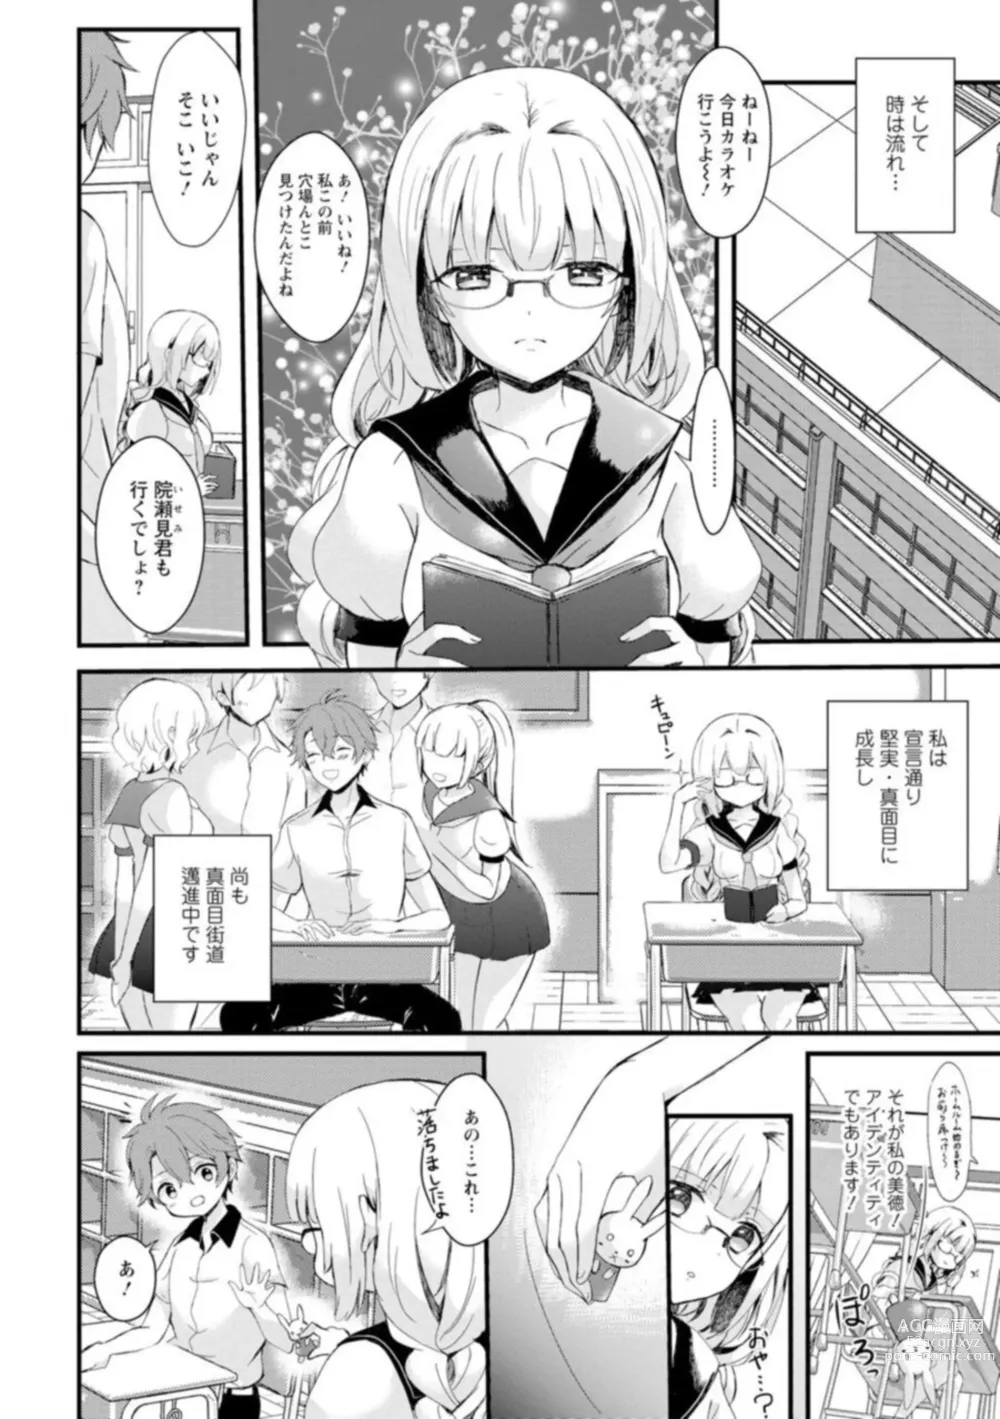 Page 6 of manga Inma no Torihiki ~ Shojonanoni oku made Sosoga re Chau! Inma no ai wa Atsuku Torokete  ~ 1